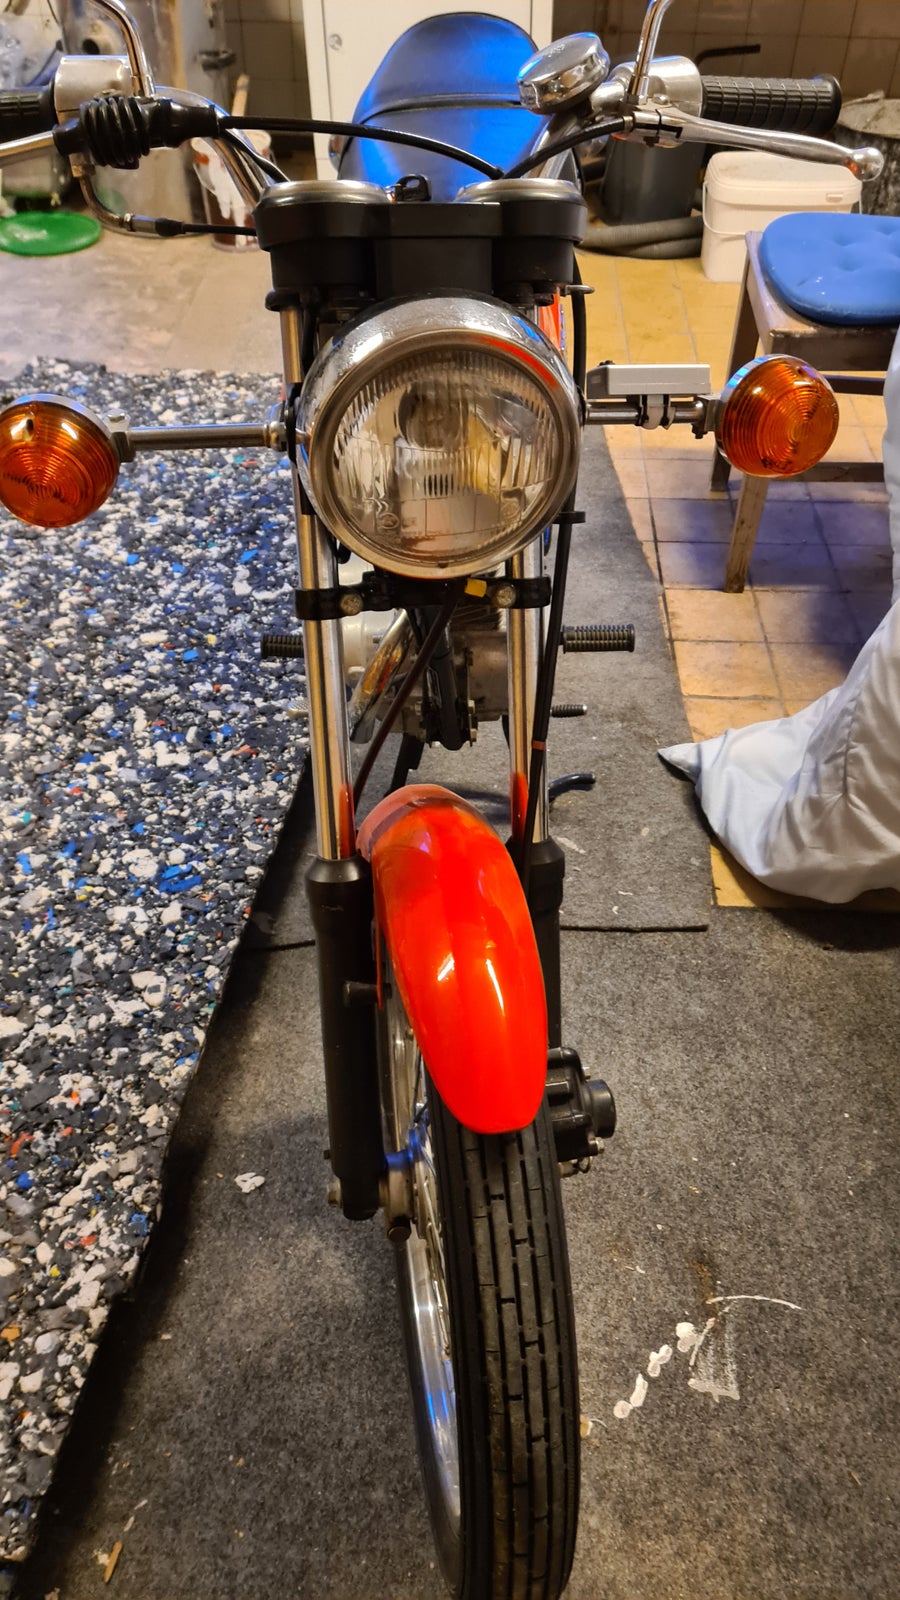 Honda CB50, 1980, Rød